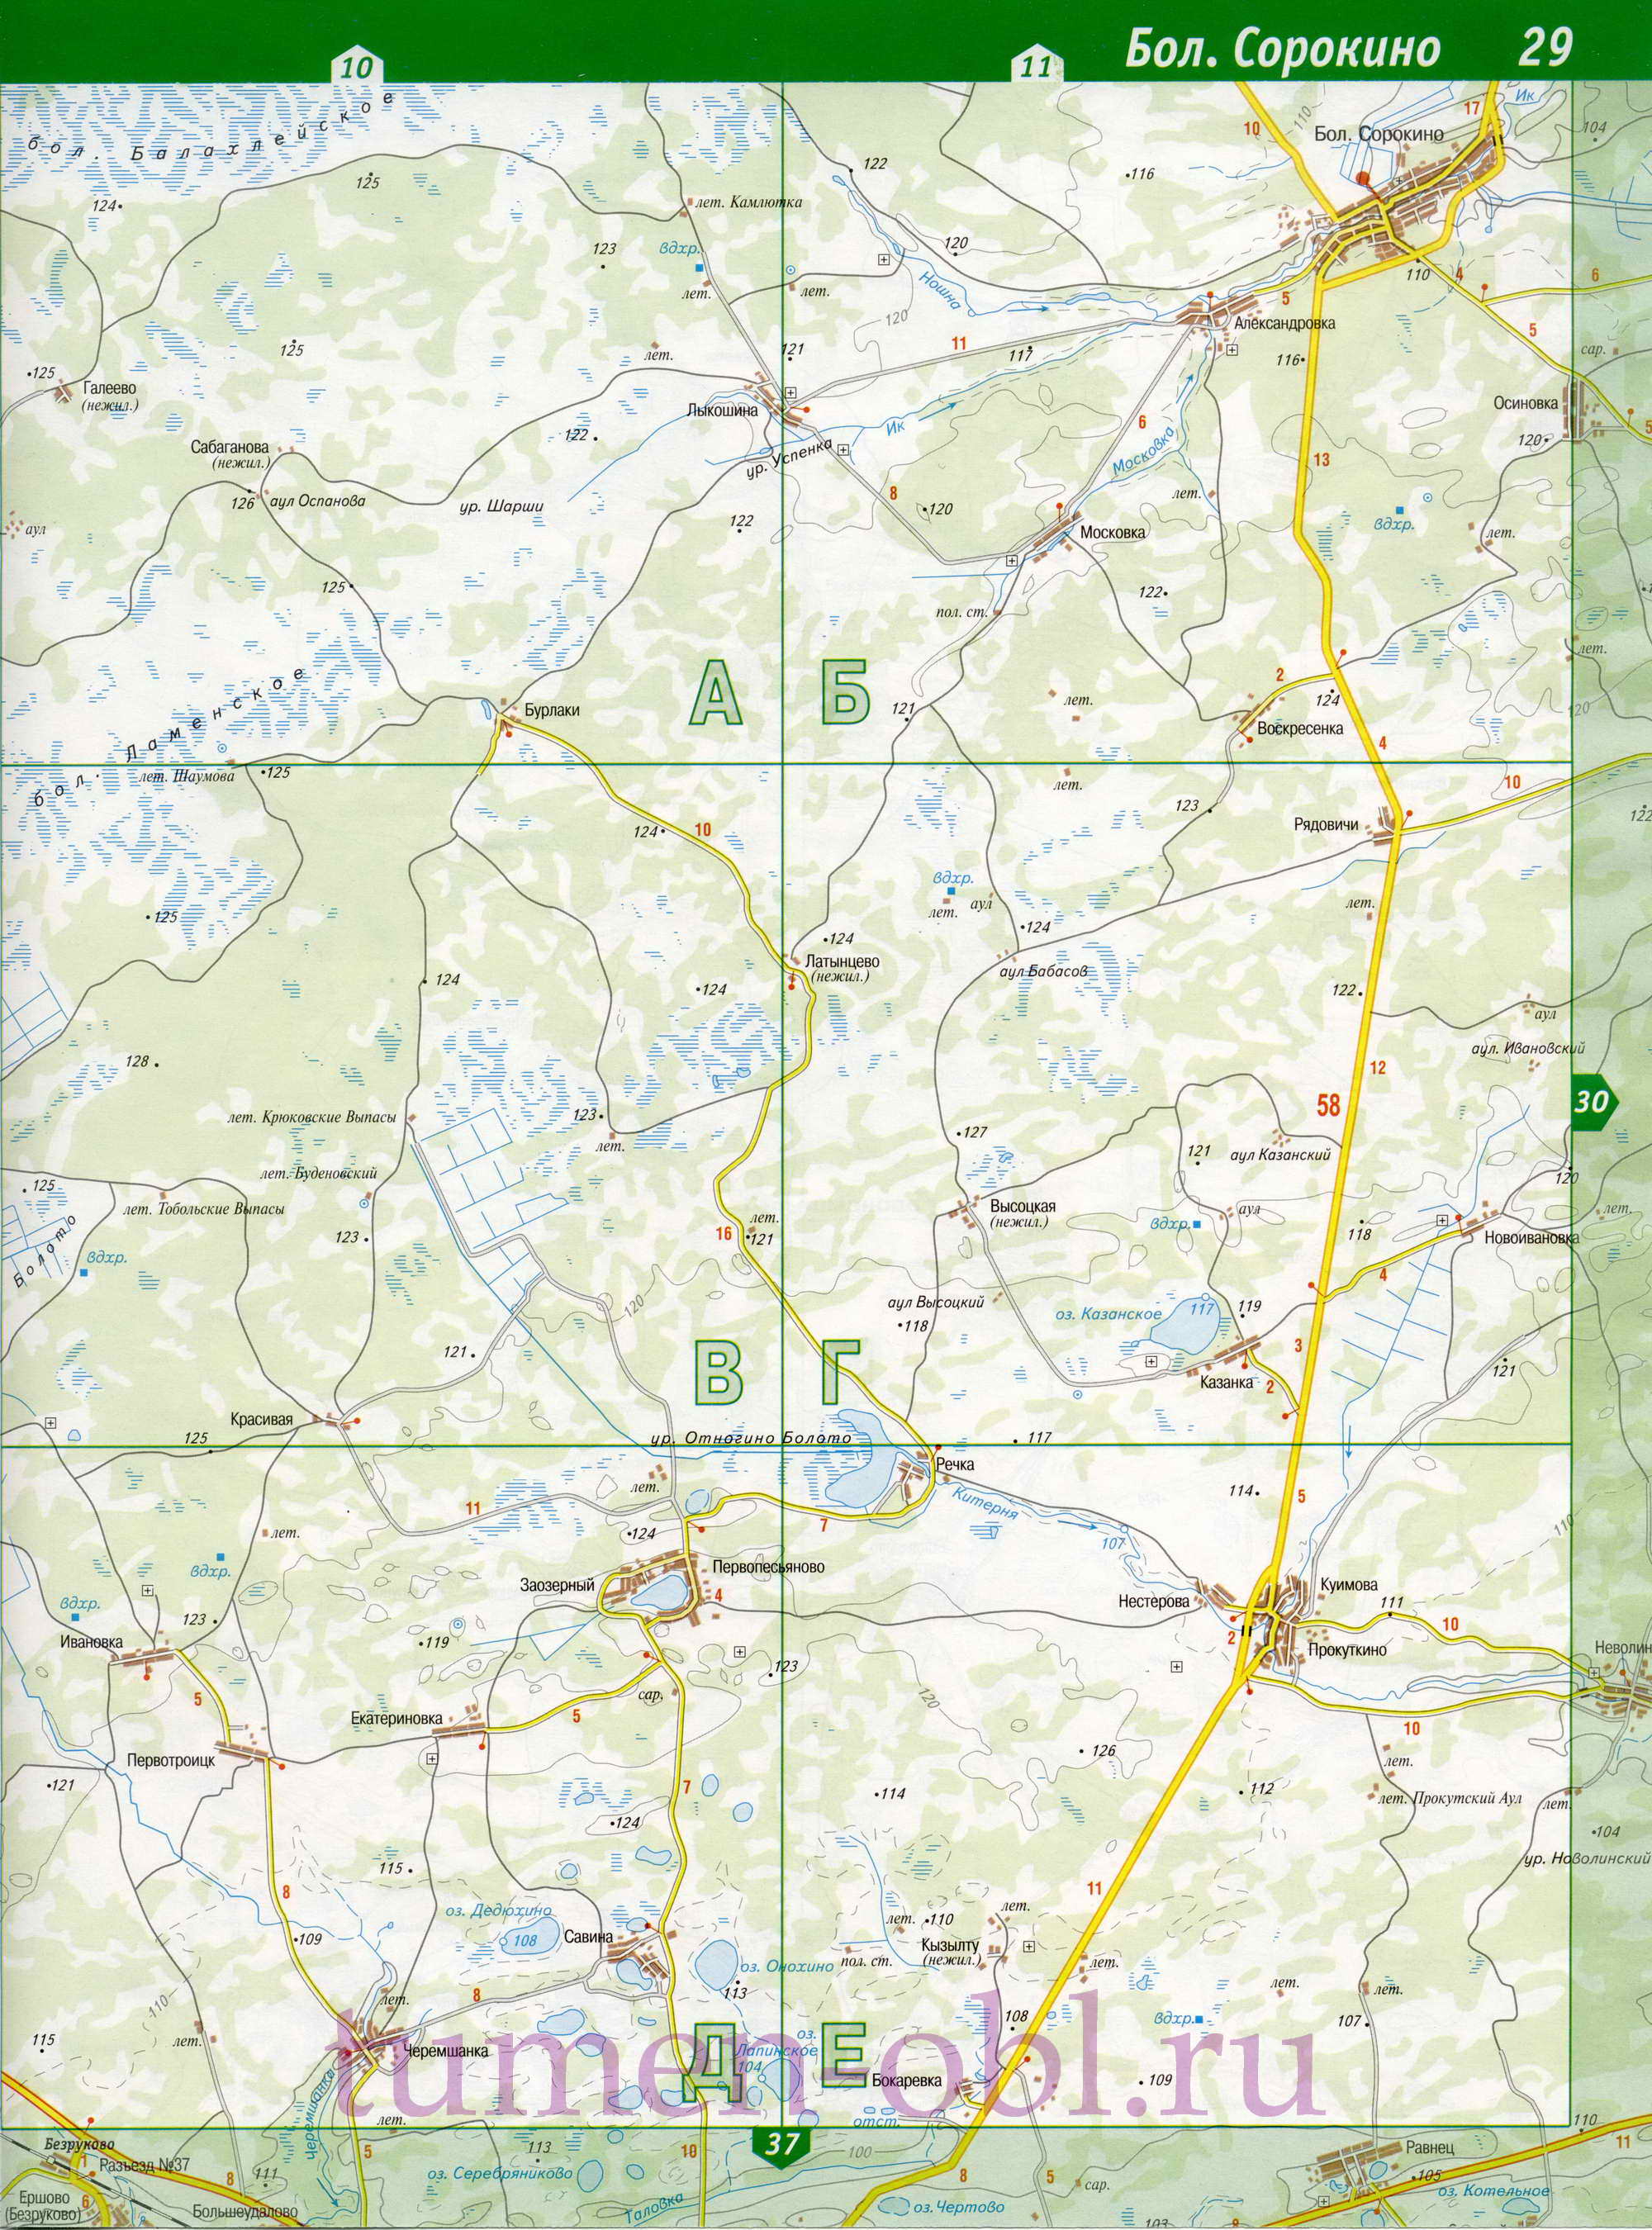 Карта Ишимский район Тюменской области. Подробная крупномасштабная карта Ишимского района, B0 - 